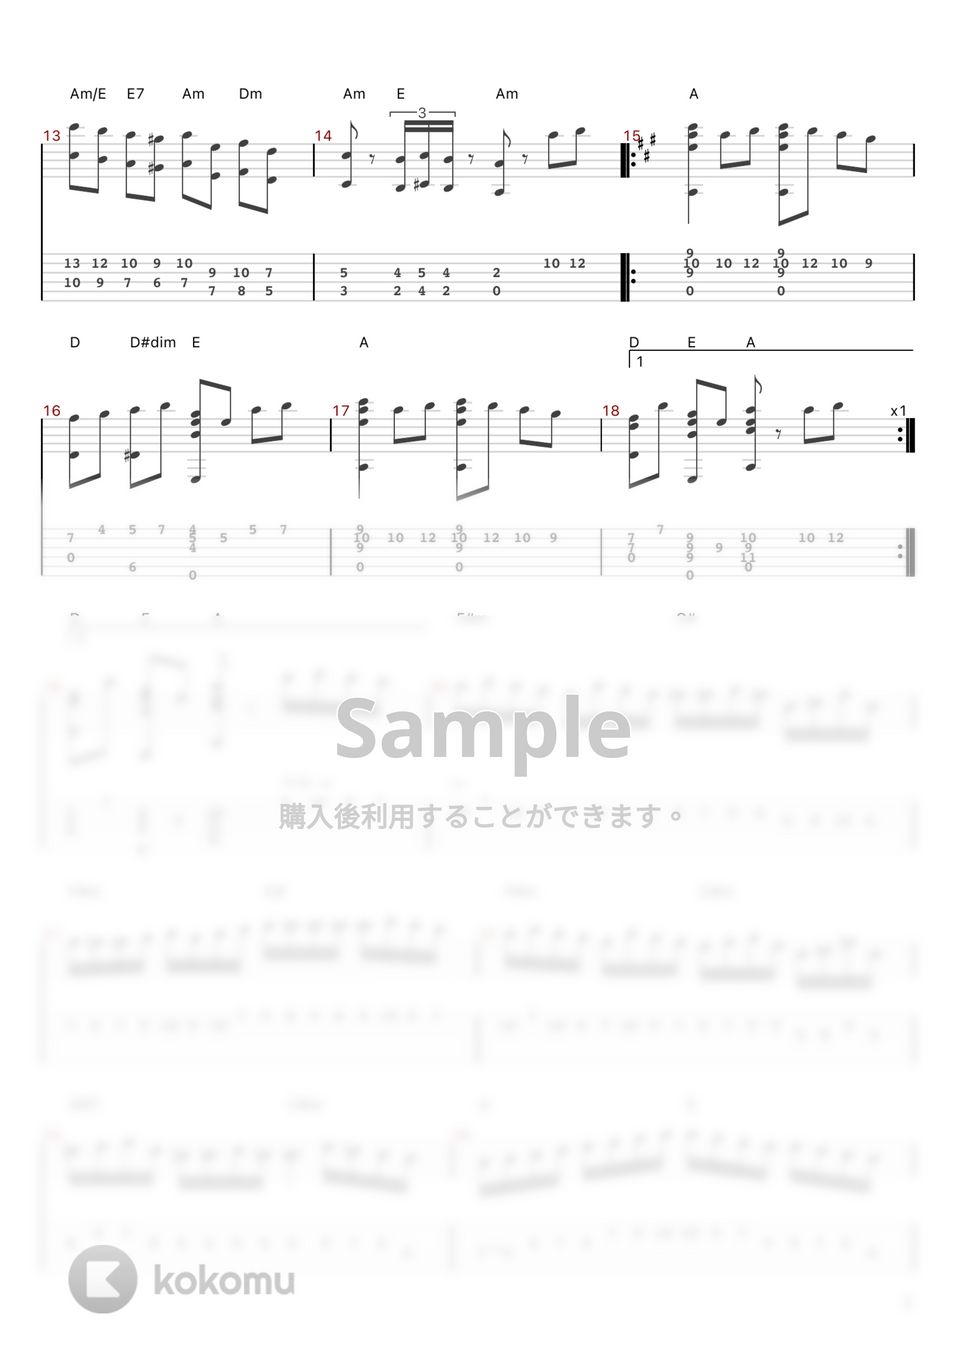 モーツァルト - トルコ行進曲 (ソロギター（ピック弾き）) by 伊尾木翔史